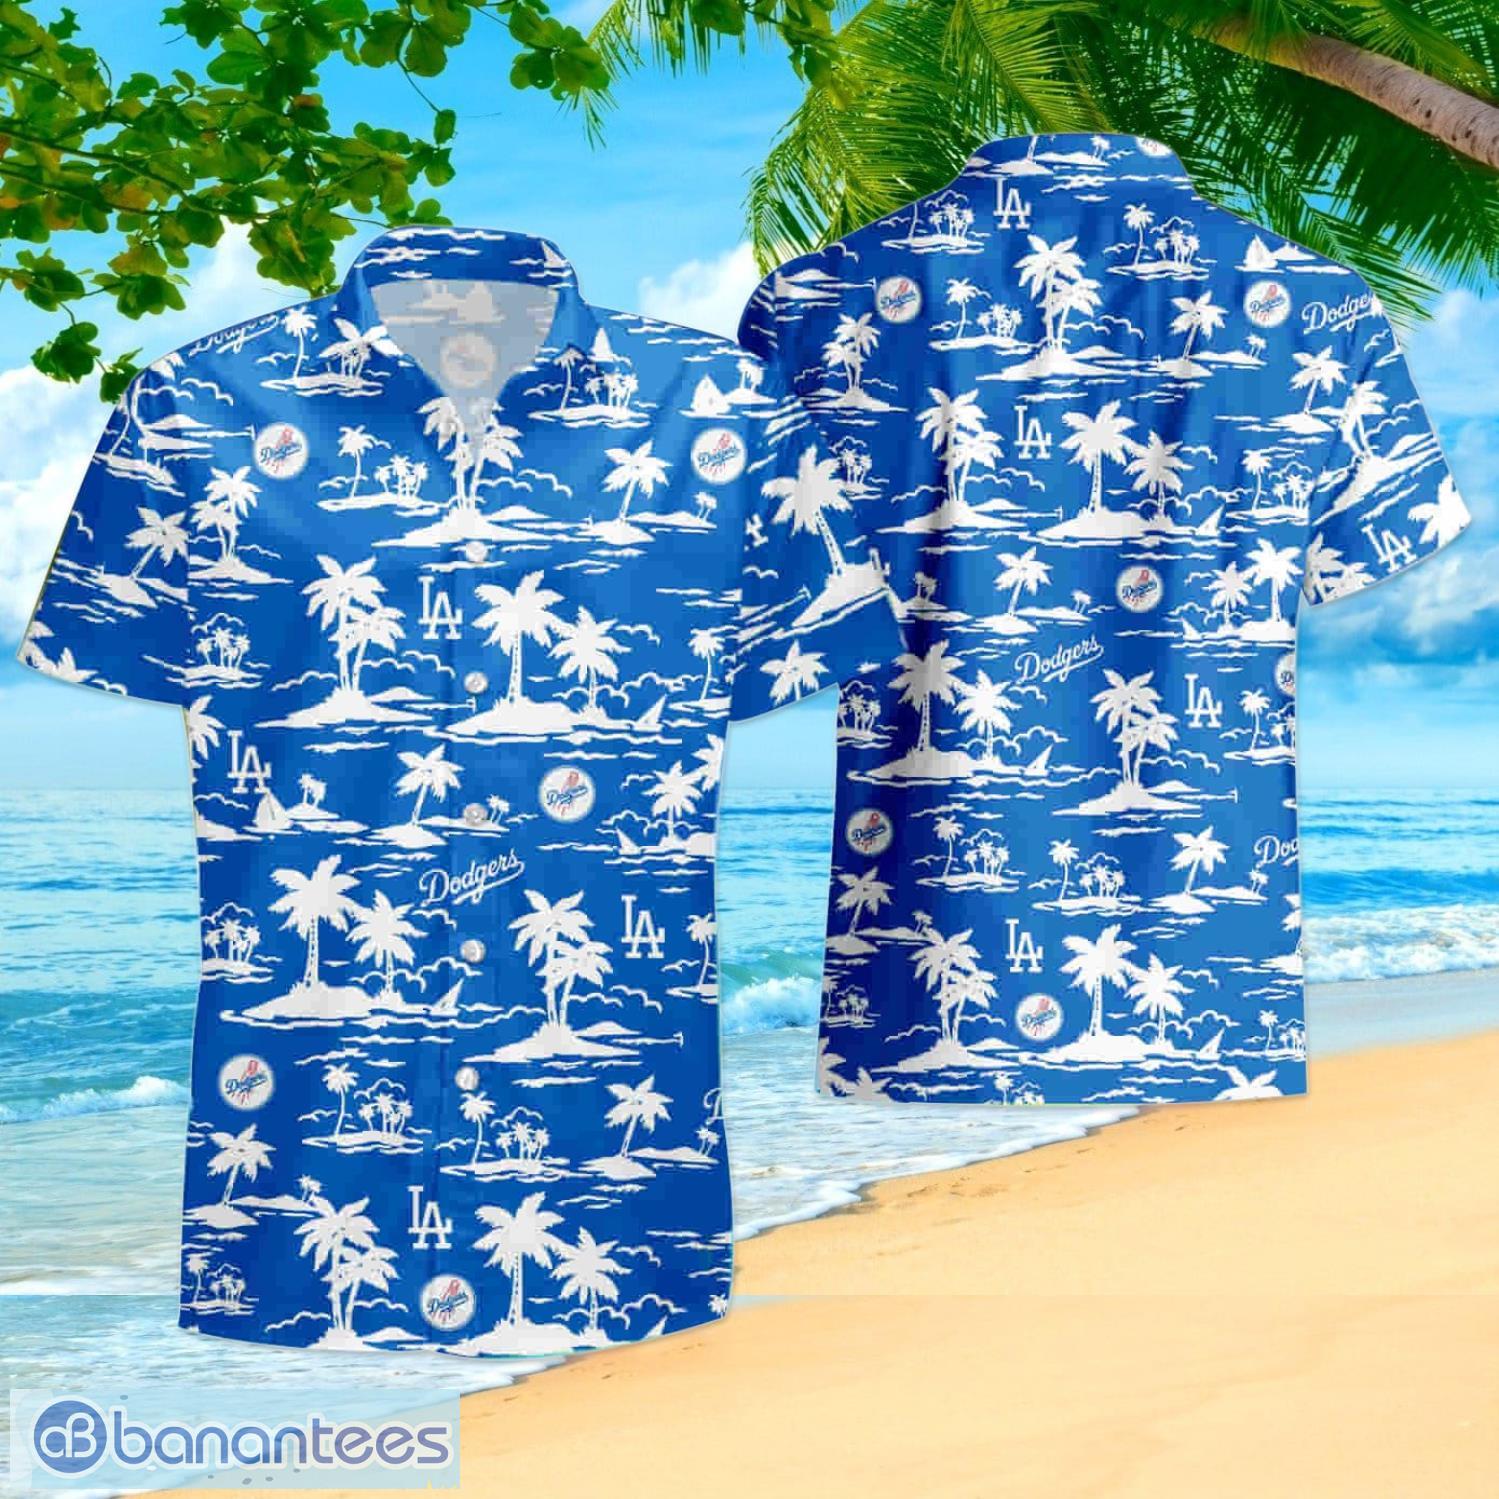 Los Angeles Doggers Vintage MLB Hawaiian Shirt And Shorts Summer Gift For  Fans - Banantees